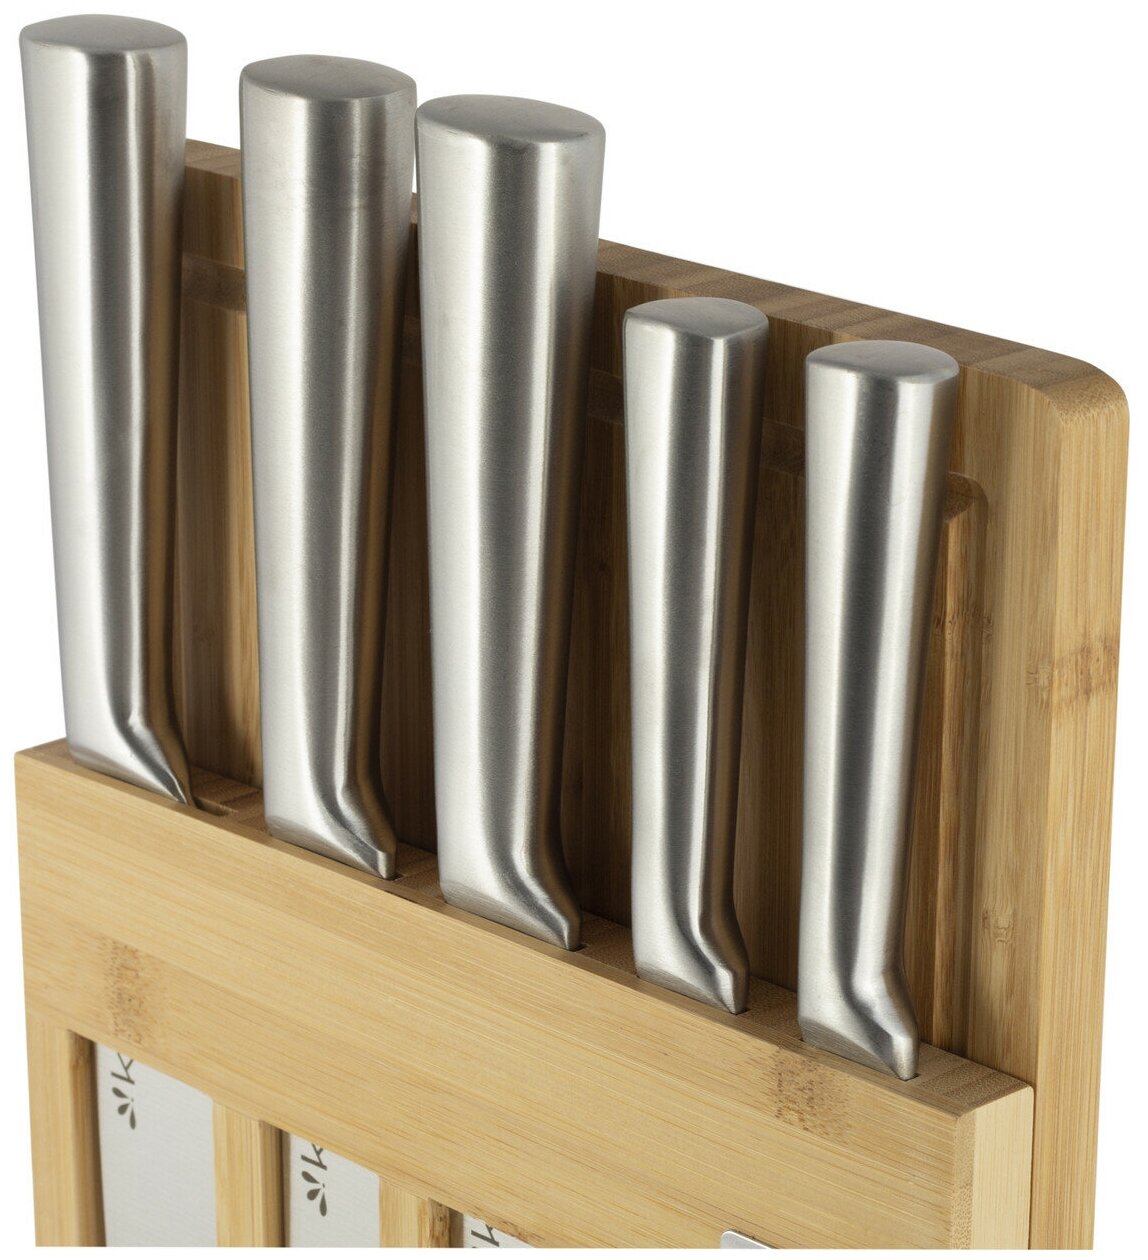 Набор кухонных ножей из нержавеющей стали на подставке Kamille KM-5168 (5 ножей + досточка) оптом - Фото №4